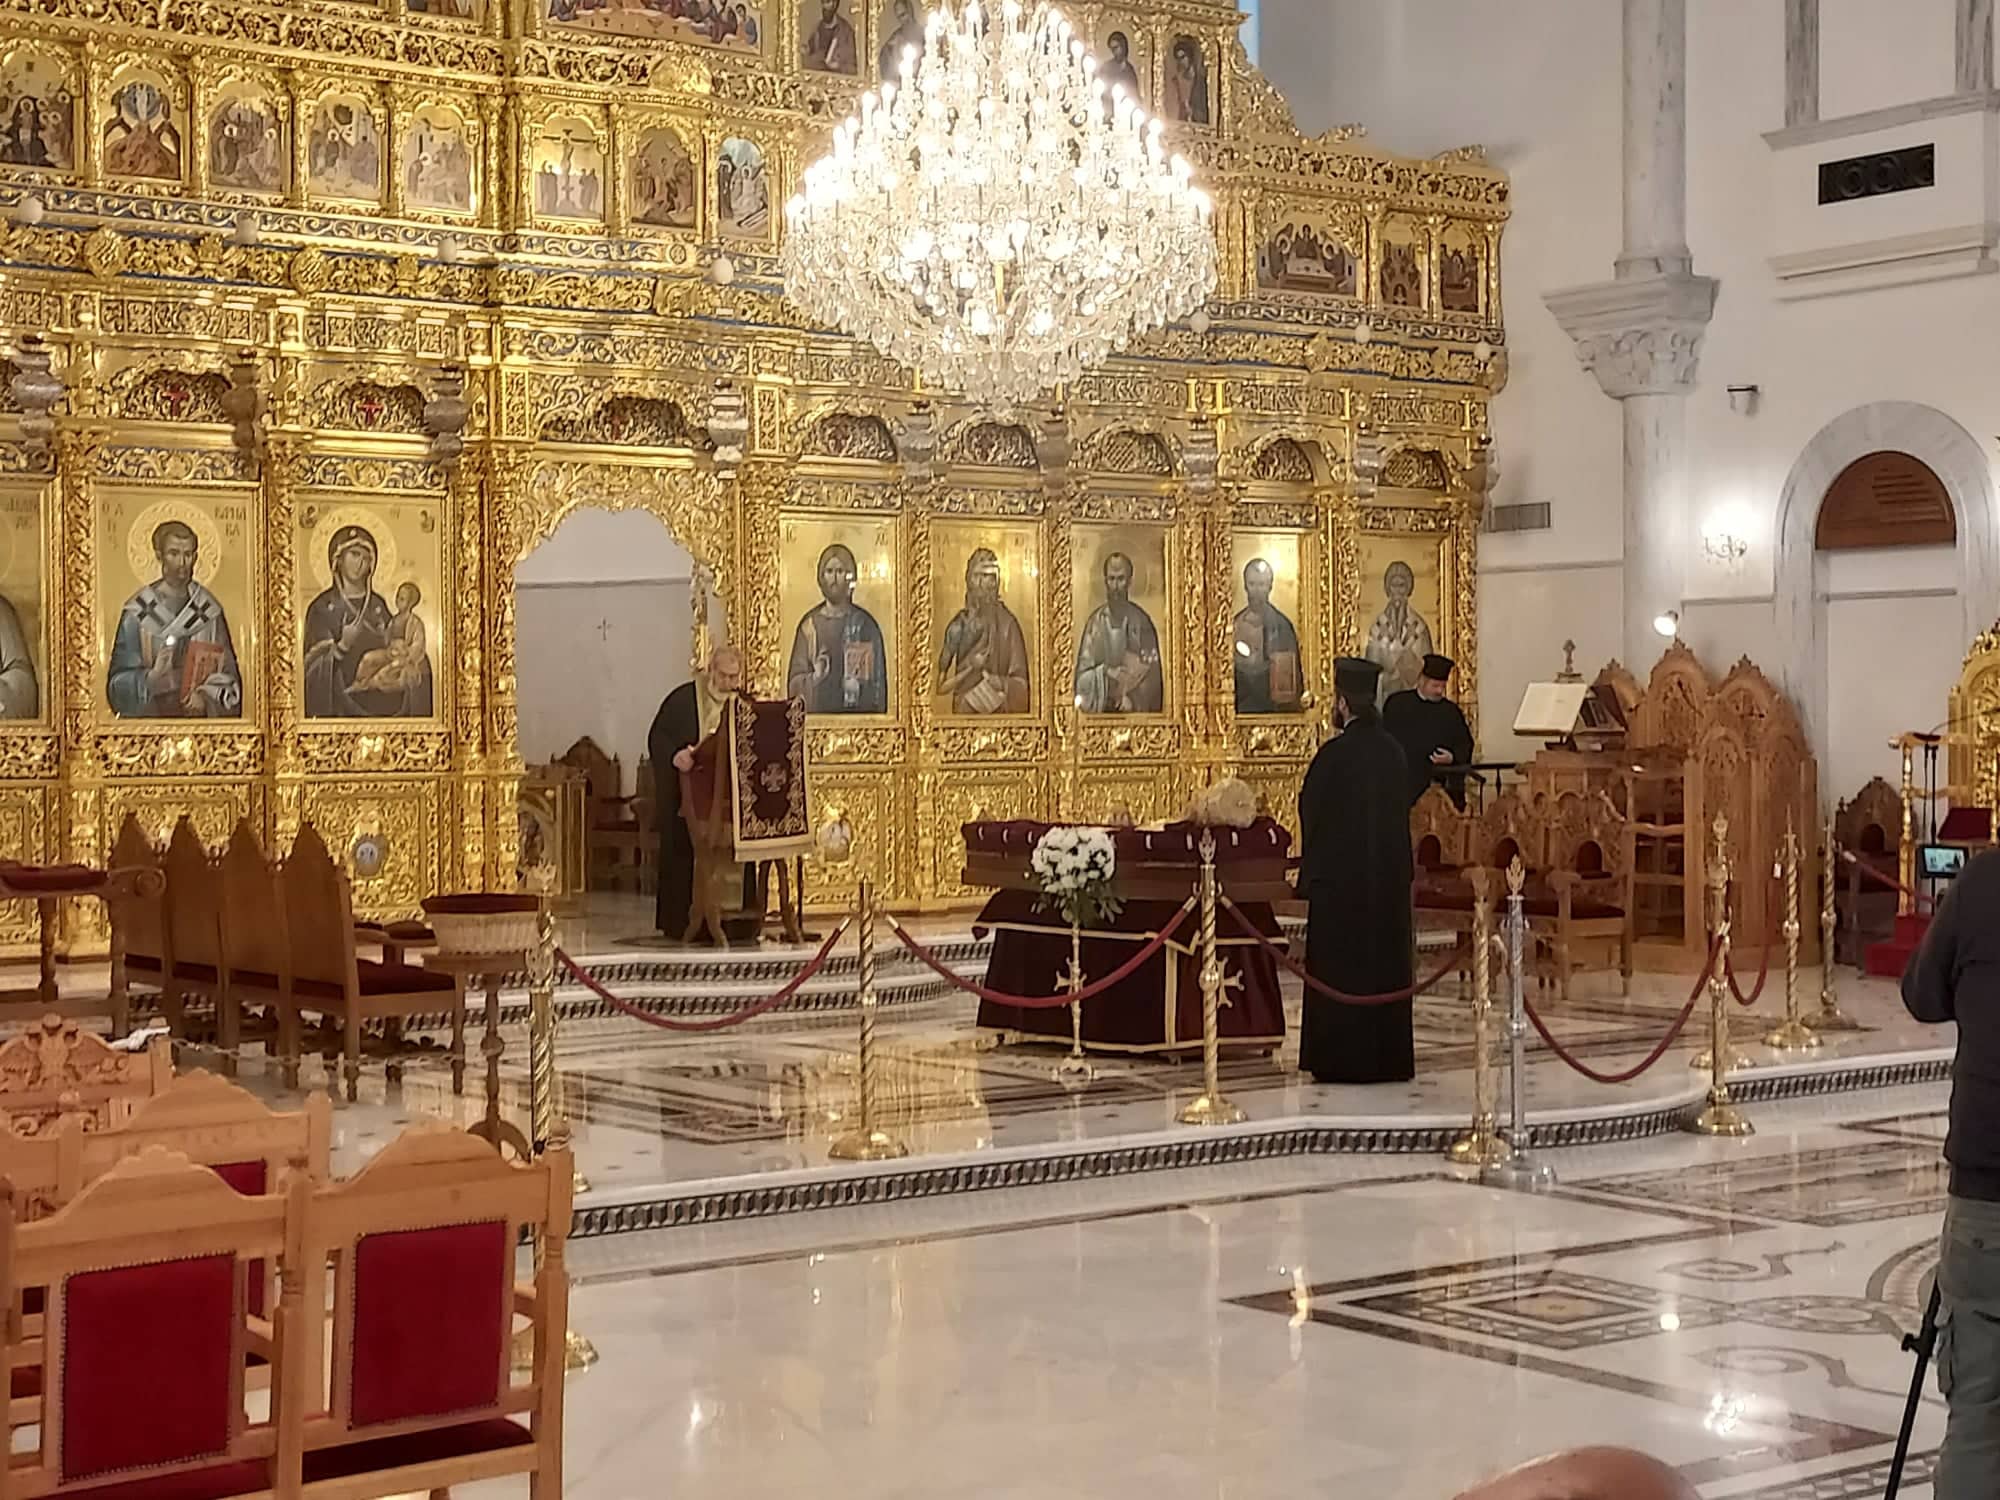 Ιερά Αρχιεπισκοπή Κύπρου: H ανακοίνωση για την εξόδιο Ακολουθία του Αρχιεπισκόπου Χρυσοστόμου Β'